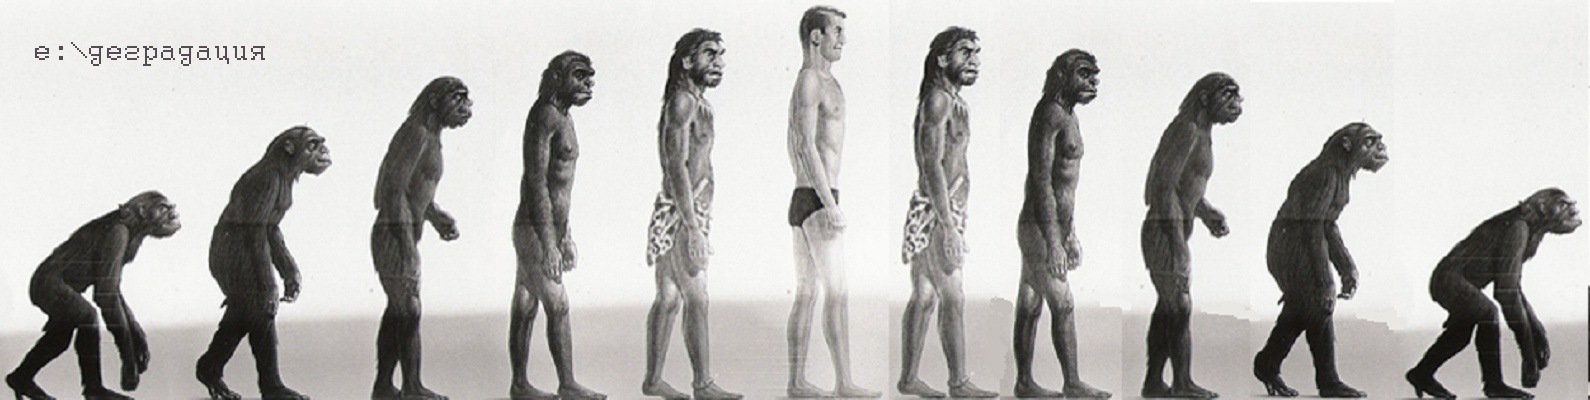 Процесс превращения человека в обезьяну. Эволюция человека хомо сапиенс. Хомо сапиенс обезьяна. Эволюция Дарвин хомо. Цепочка Дарвина эволюционная.